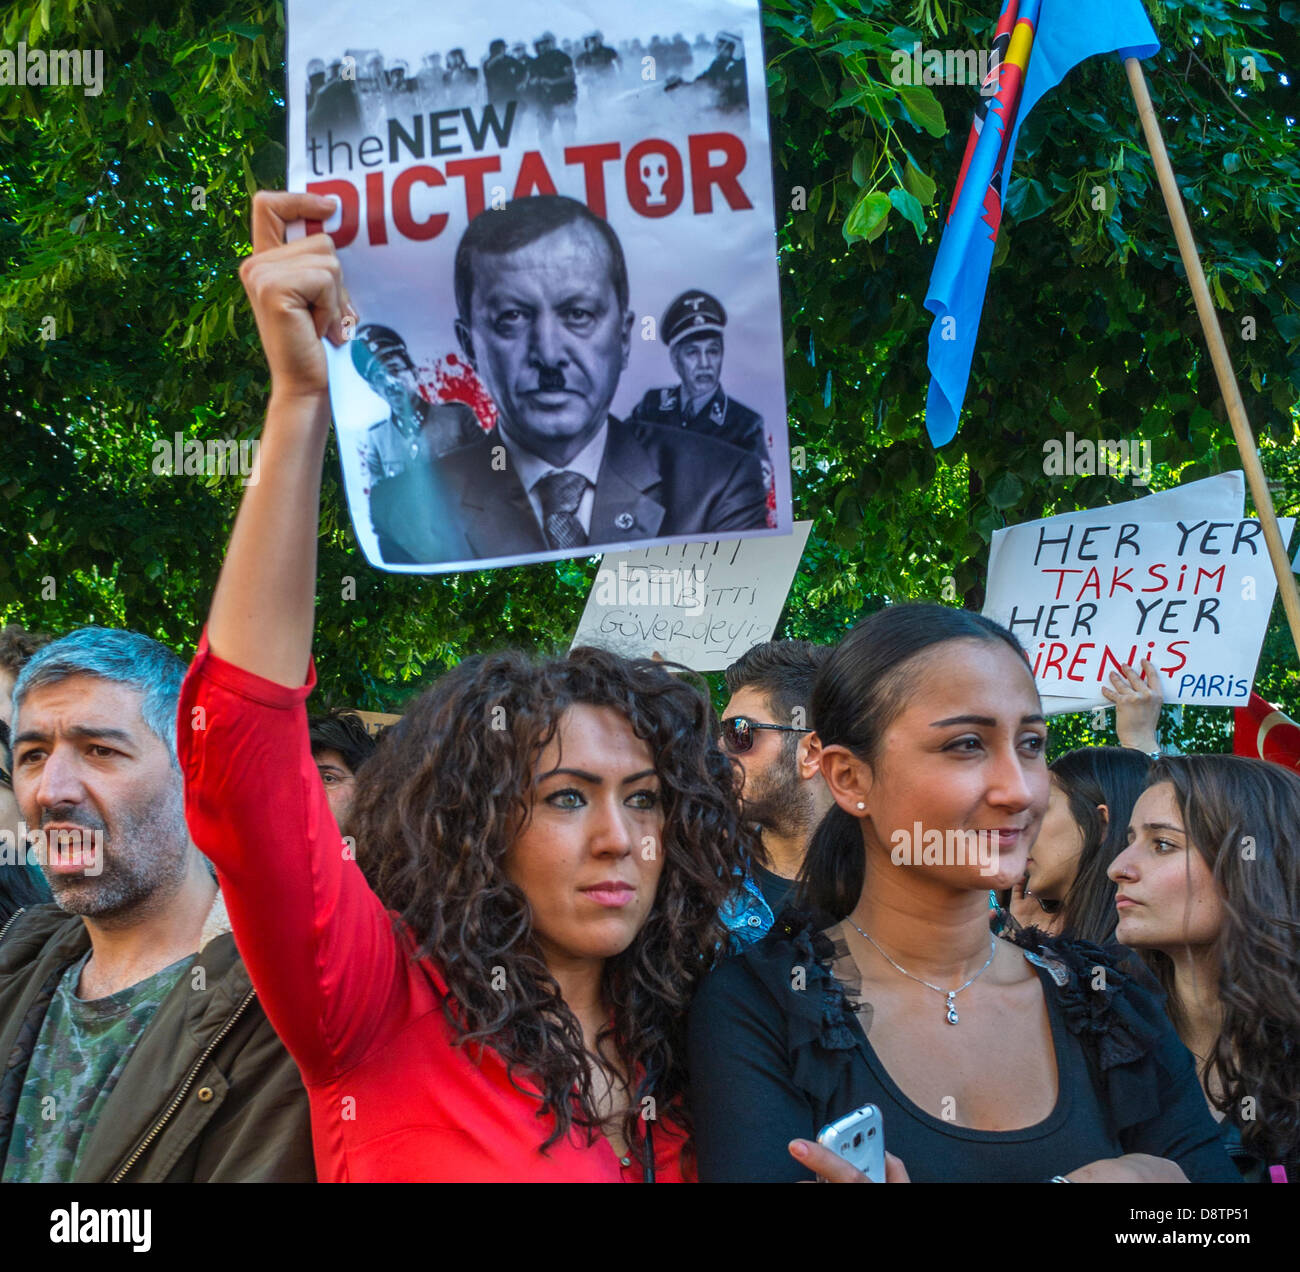 Paris, Frankreich. Türkische Bevölkerung, die bei den jüngsten an-kara-Anti-Regierungs-Demonstrationen gegen das harte Vorgehen der türkischen Regierung protestiert. Frau, die Protest hält, Zeichen "der neue Diktator", Jugendproteste Stockfoto